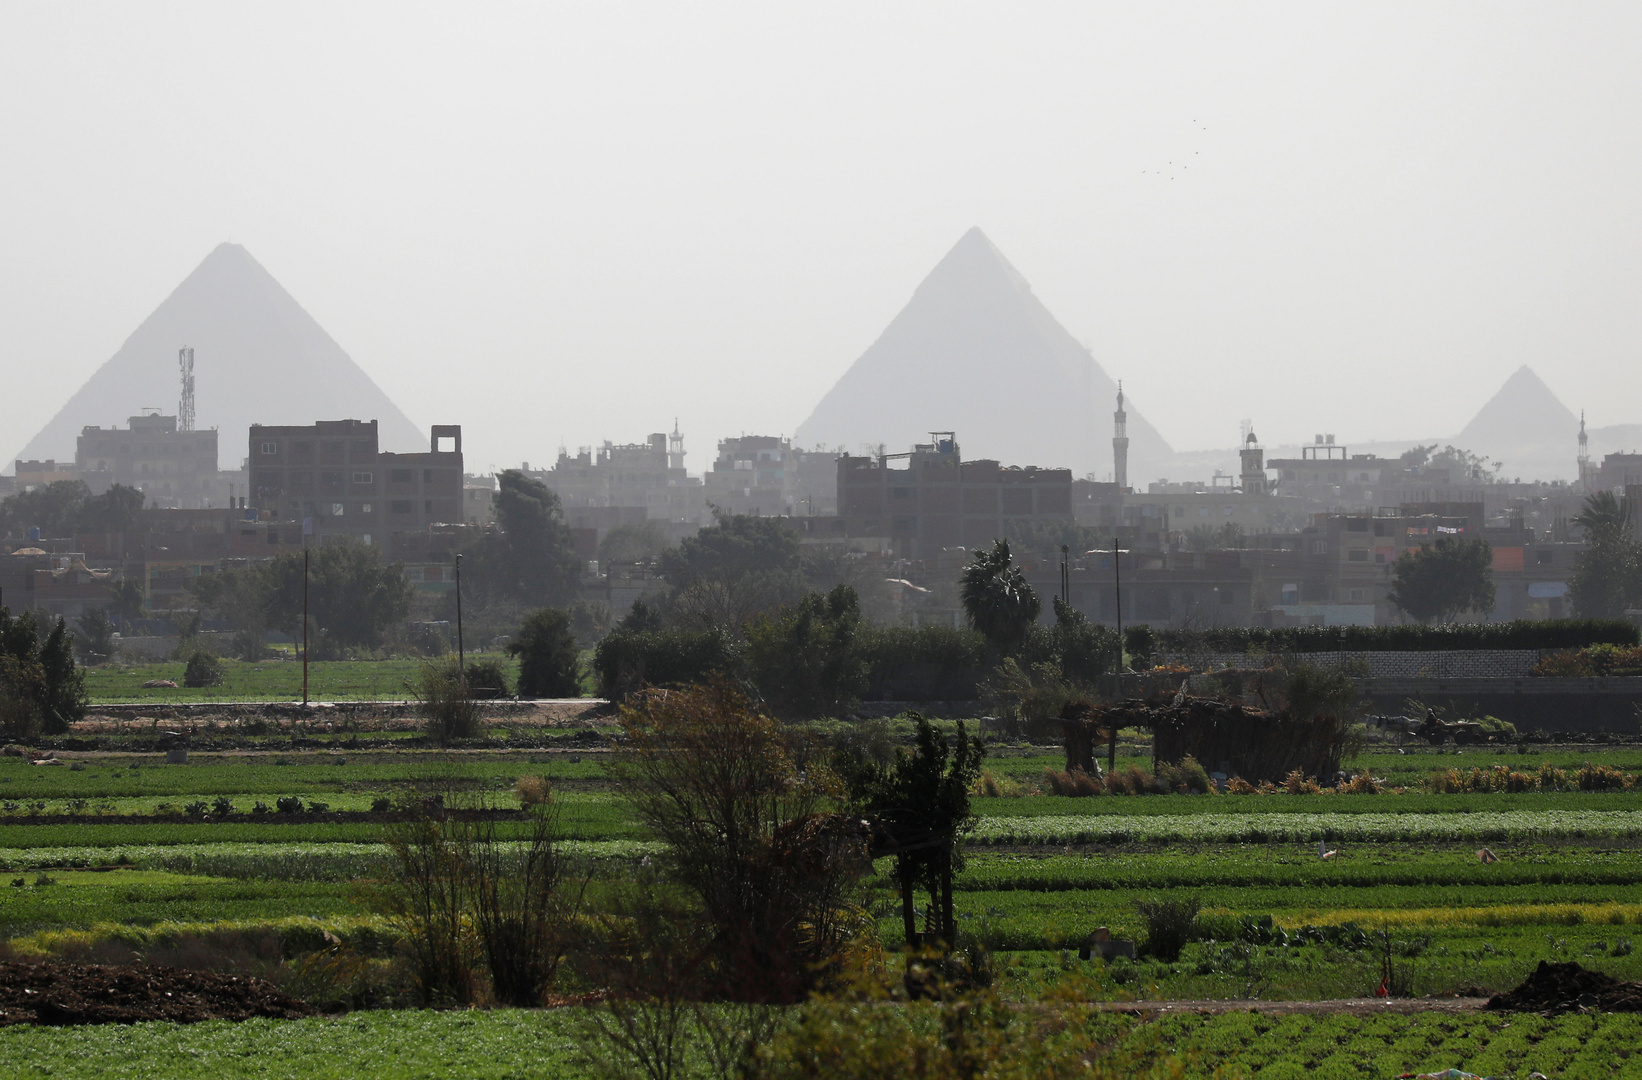 مصر.. مسؤول يتحدث عن أزمة تواجه القطاع الزراعي